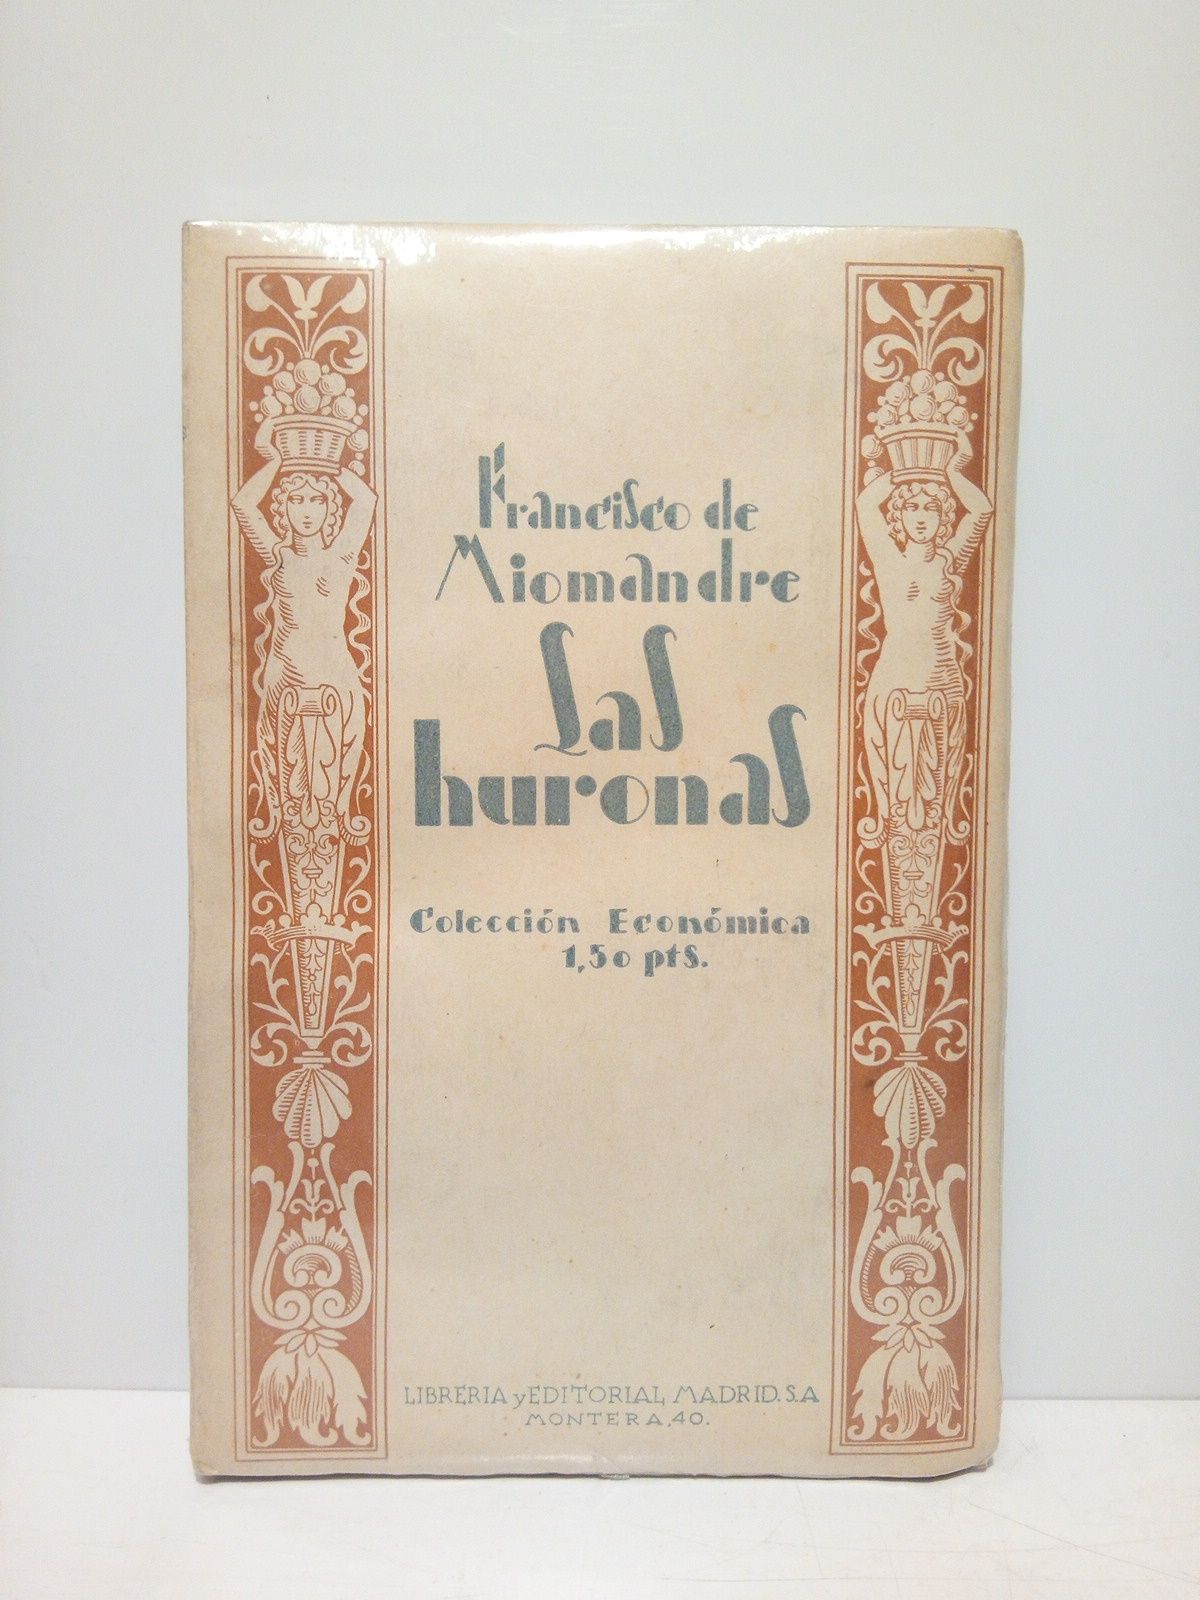 MIOMANDRE, Francisco de - Las huronas = Les Taupes /  Traduccon de Sara Insa; nota de Alberto Insa